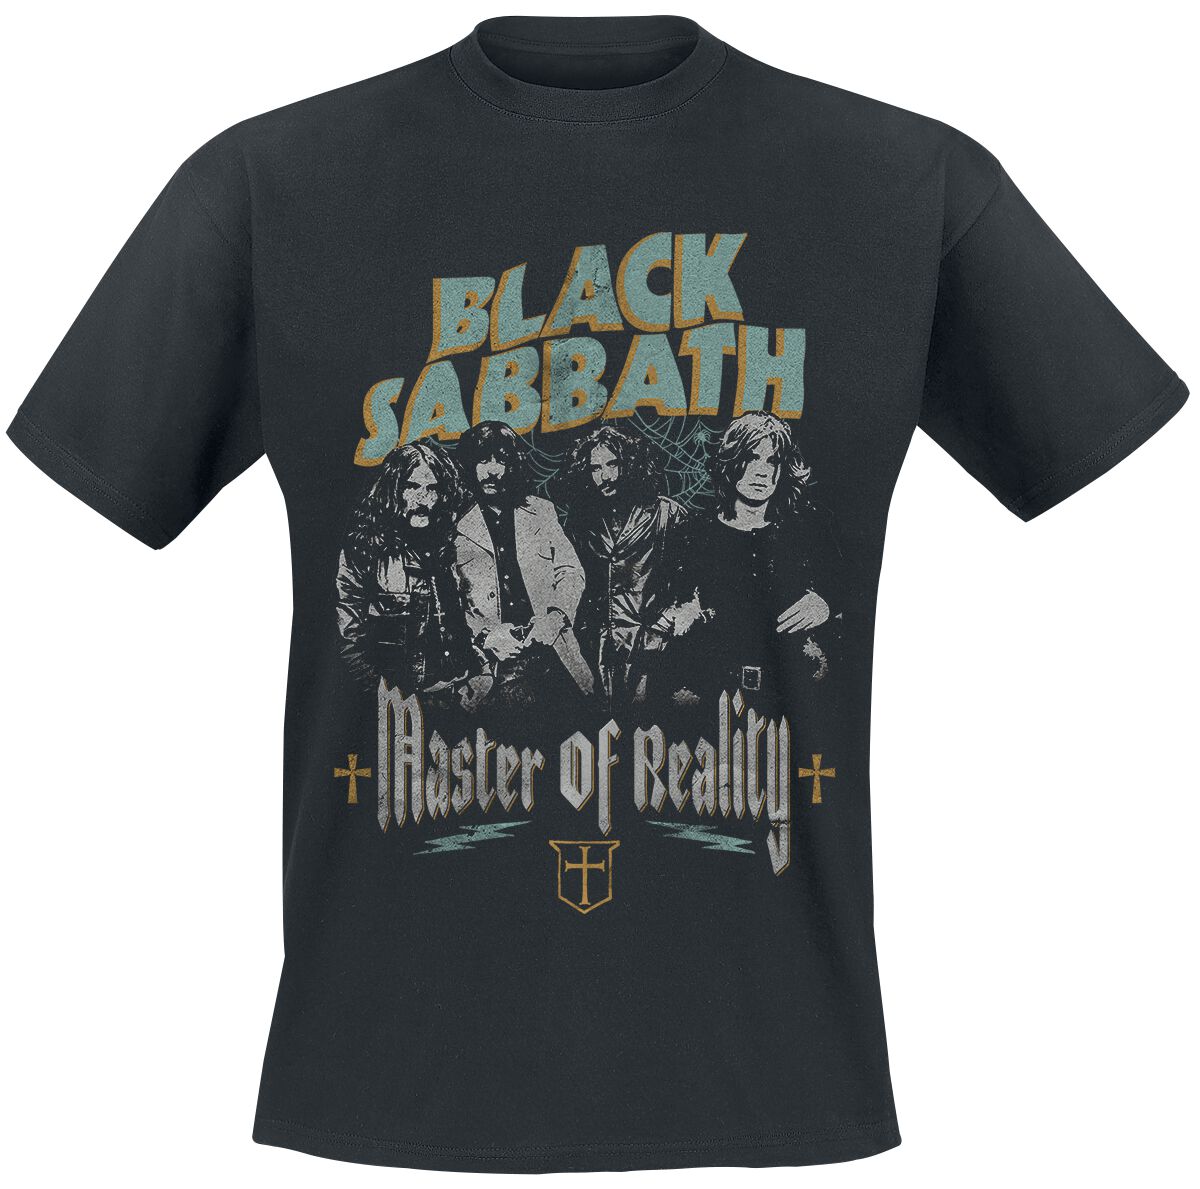 Black Sabbath T-Shirt - Master of reality - S bis 3XL - für Männer - Größe 3XL - schwarz  - Lizenziertes Merchandise!